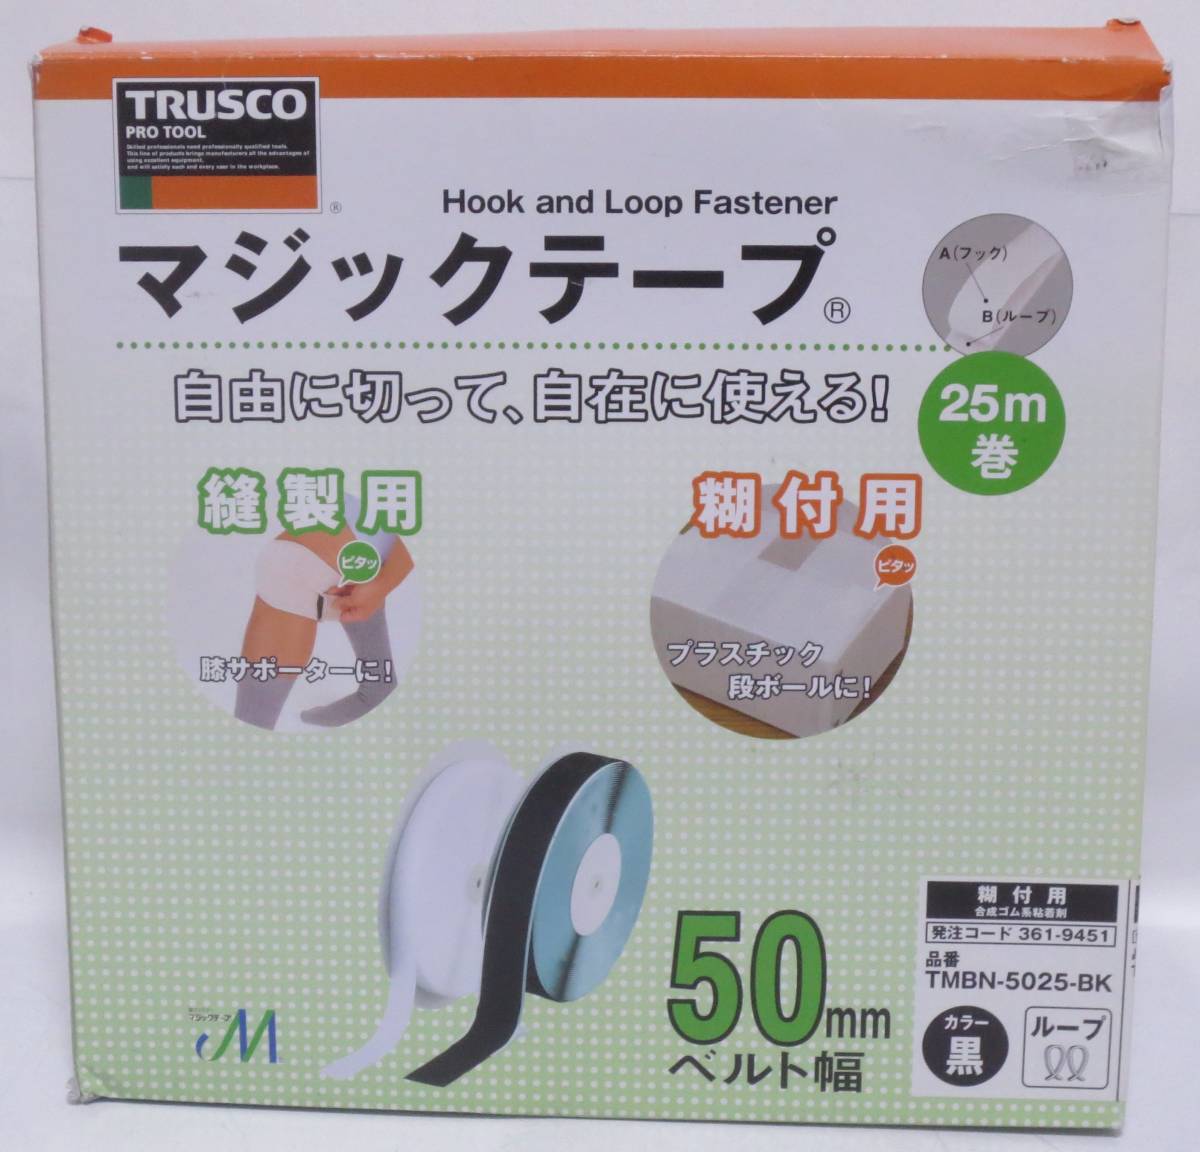 【2割程使用品】TRUSCO(トラスコ) マジックテープ 糊付B側 50mm×25m 黒_画像1